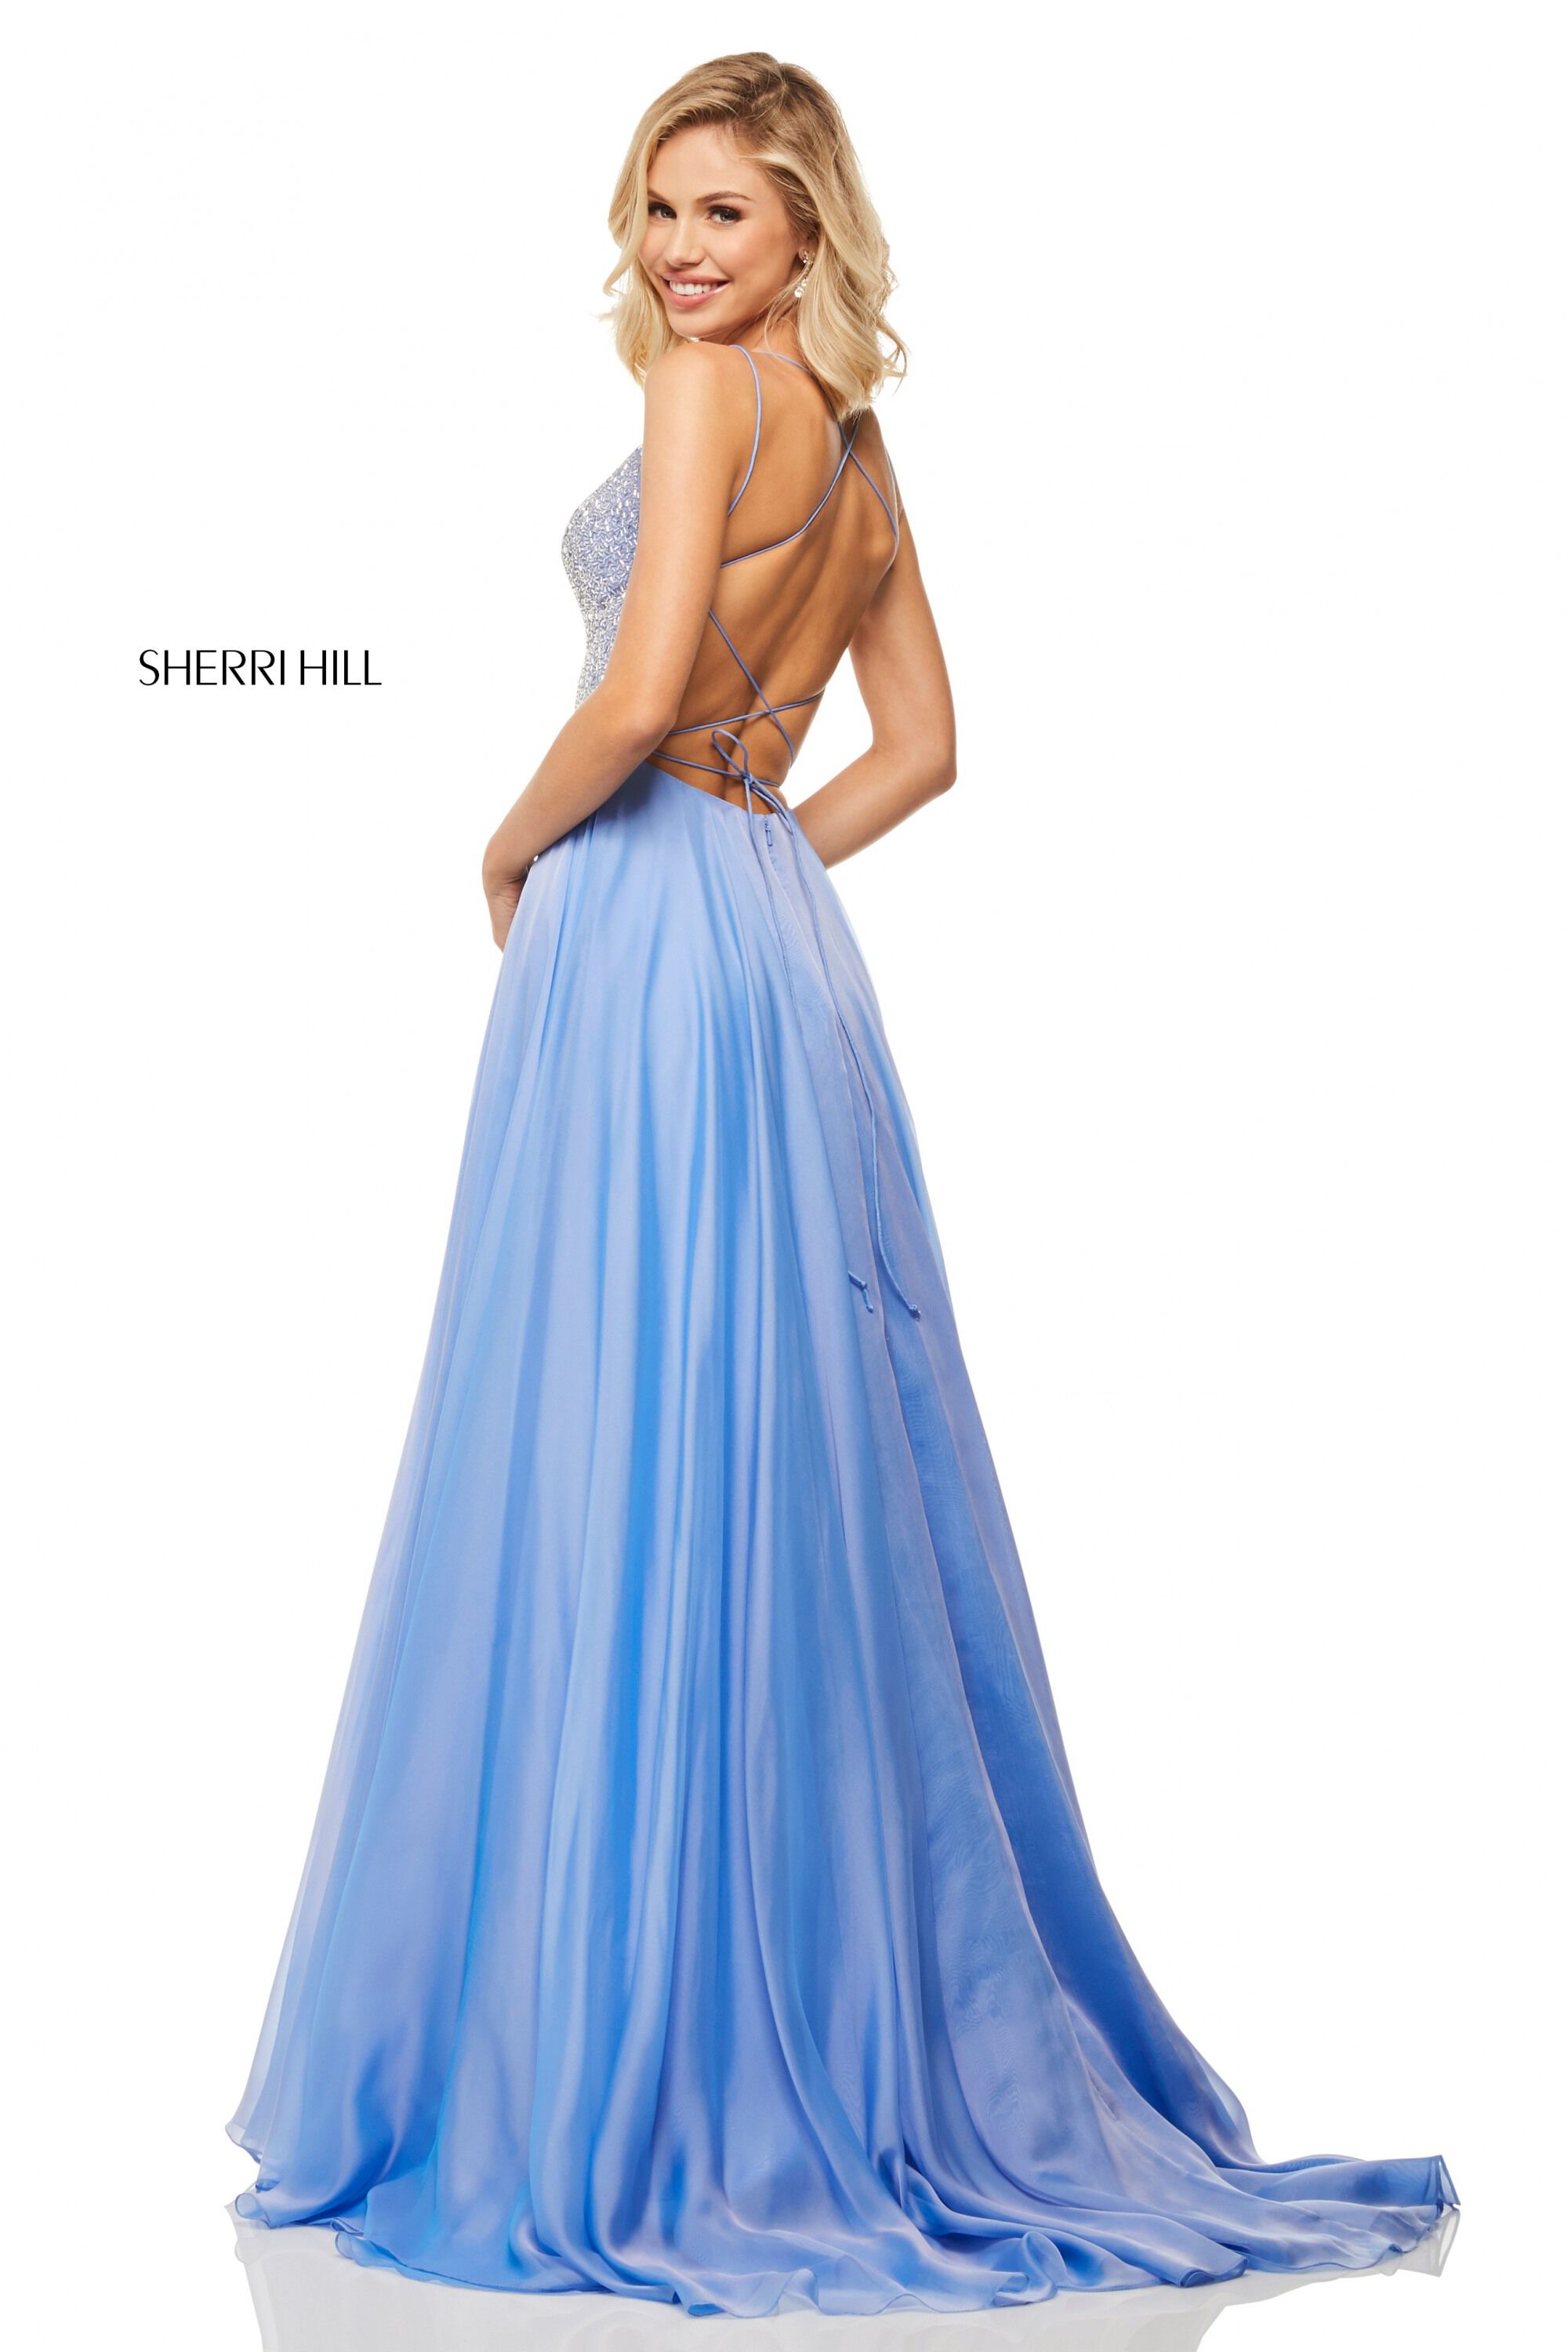 sherri hill strapless long dress